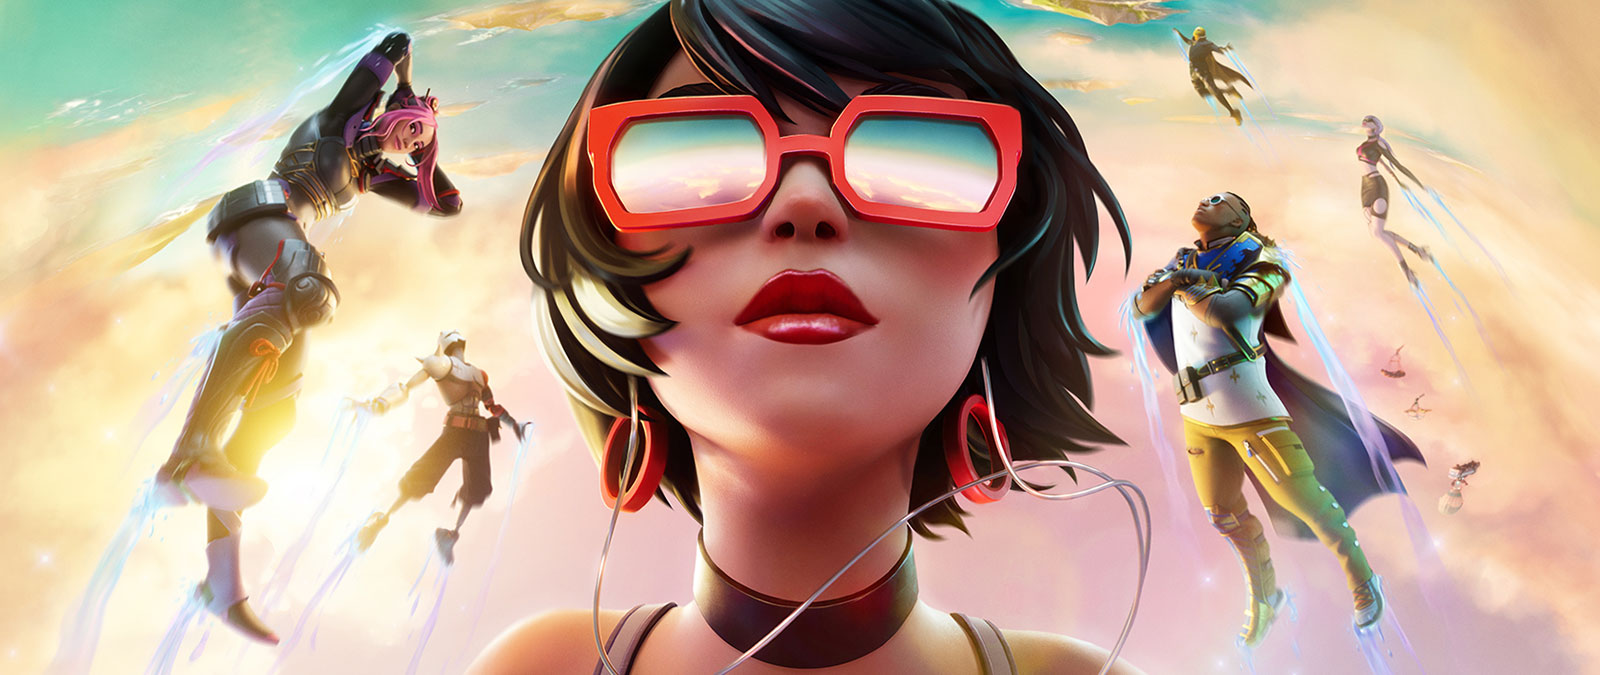 En pige med røde solbriller svæver i skyerne med andre karakterer mod en pastelfarvet himmel.